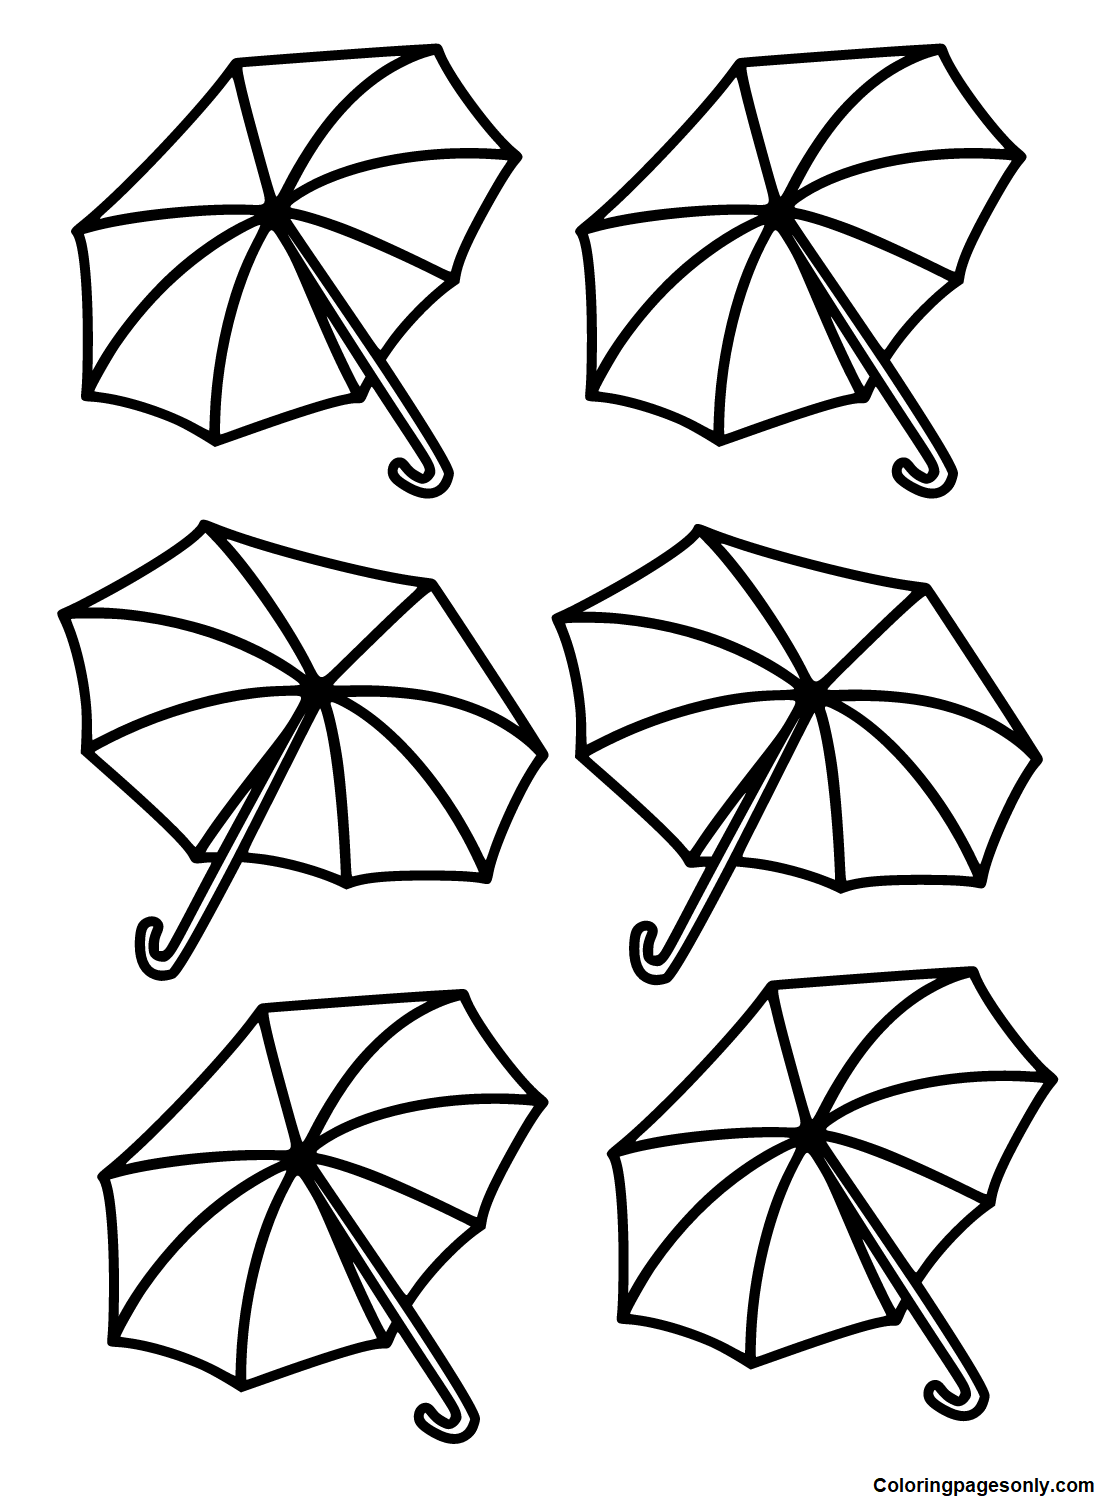 Open Umbrellas from Umbrella